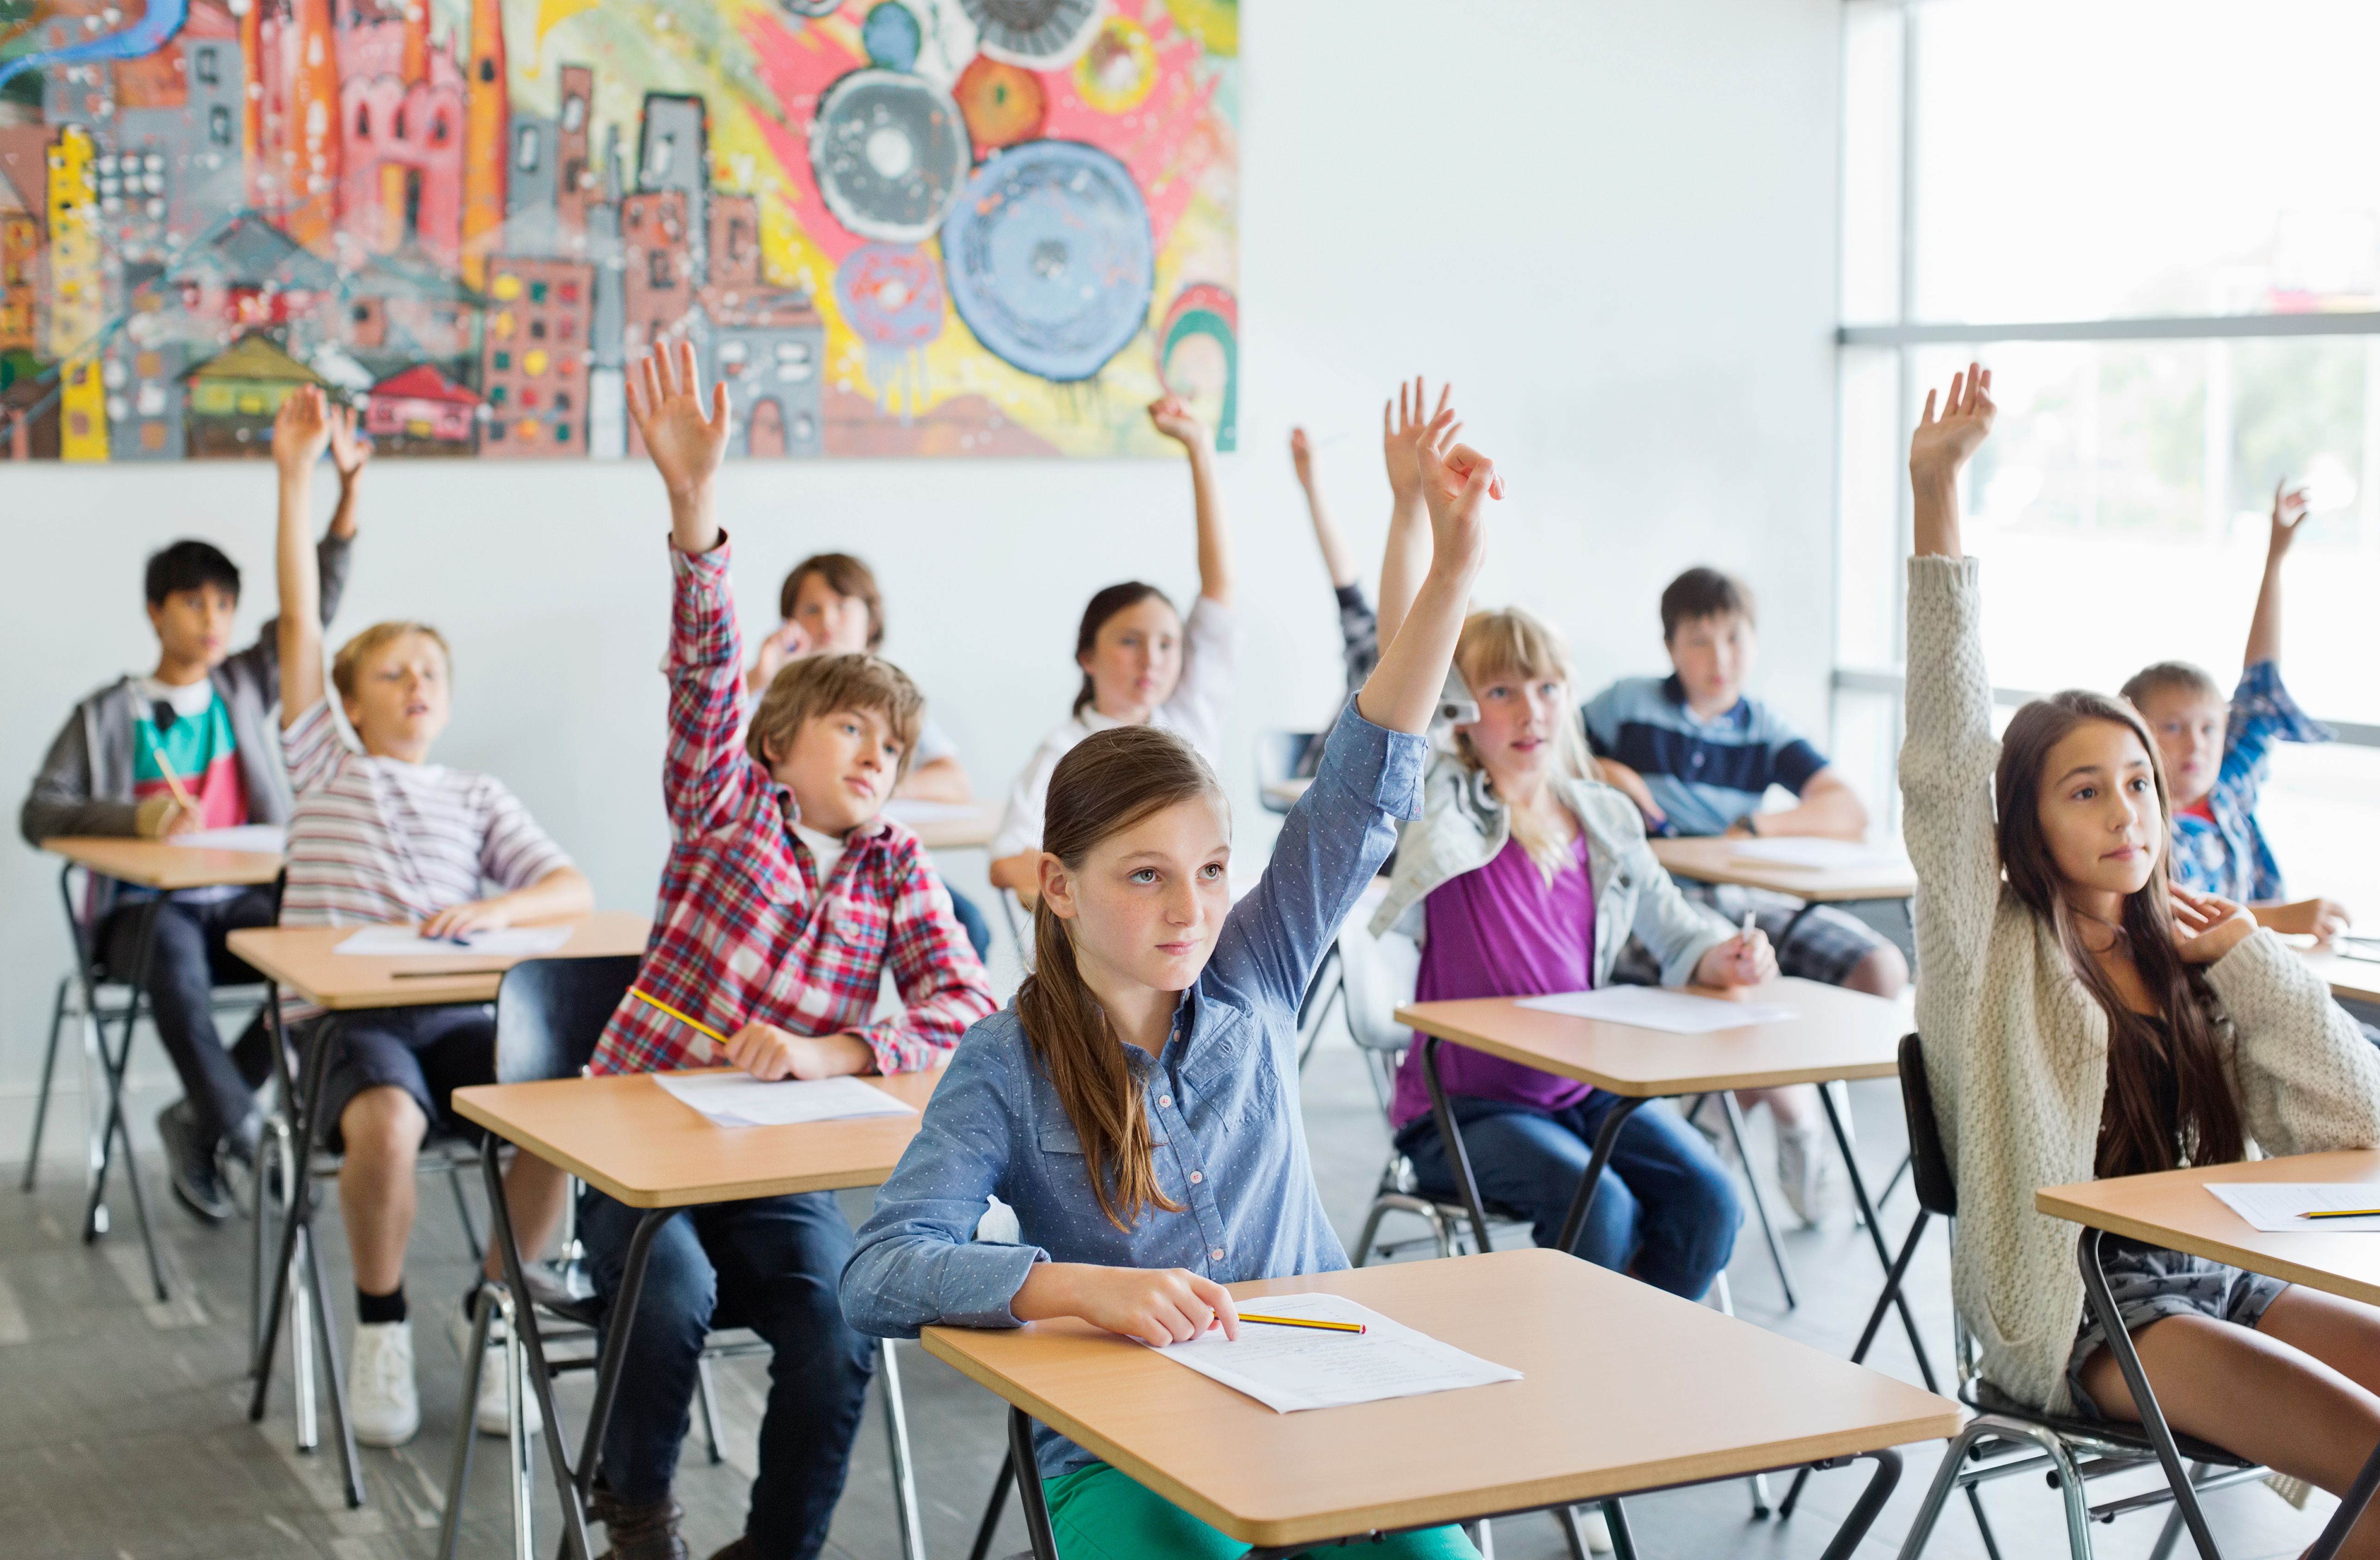 Des élèves lèvent la main en classe. | Source : Getty Images